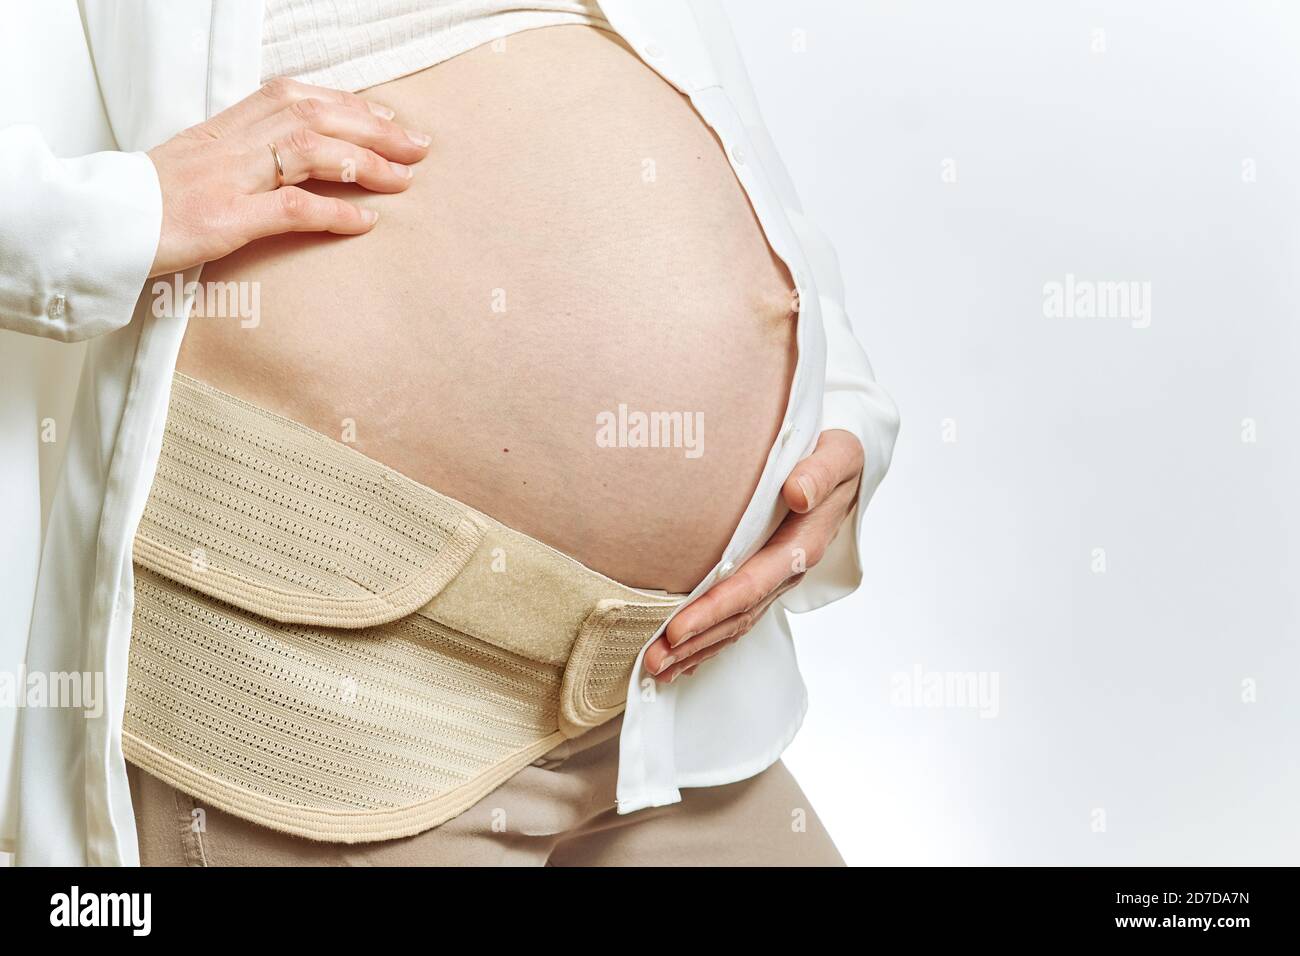 Le ventre de la femme enceinte est sans visage et les mains sont isolées de près. Maternité ceinture de grossesse abdomen support abdominal Bin. Vue latérale et espace de copie. Banque D'Images